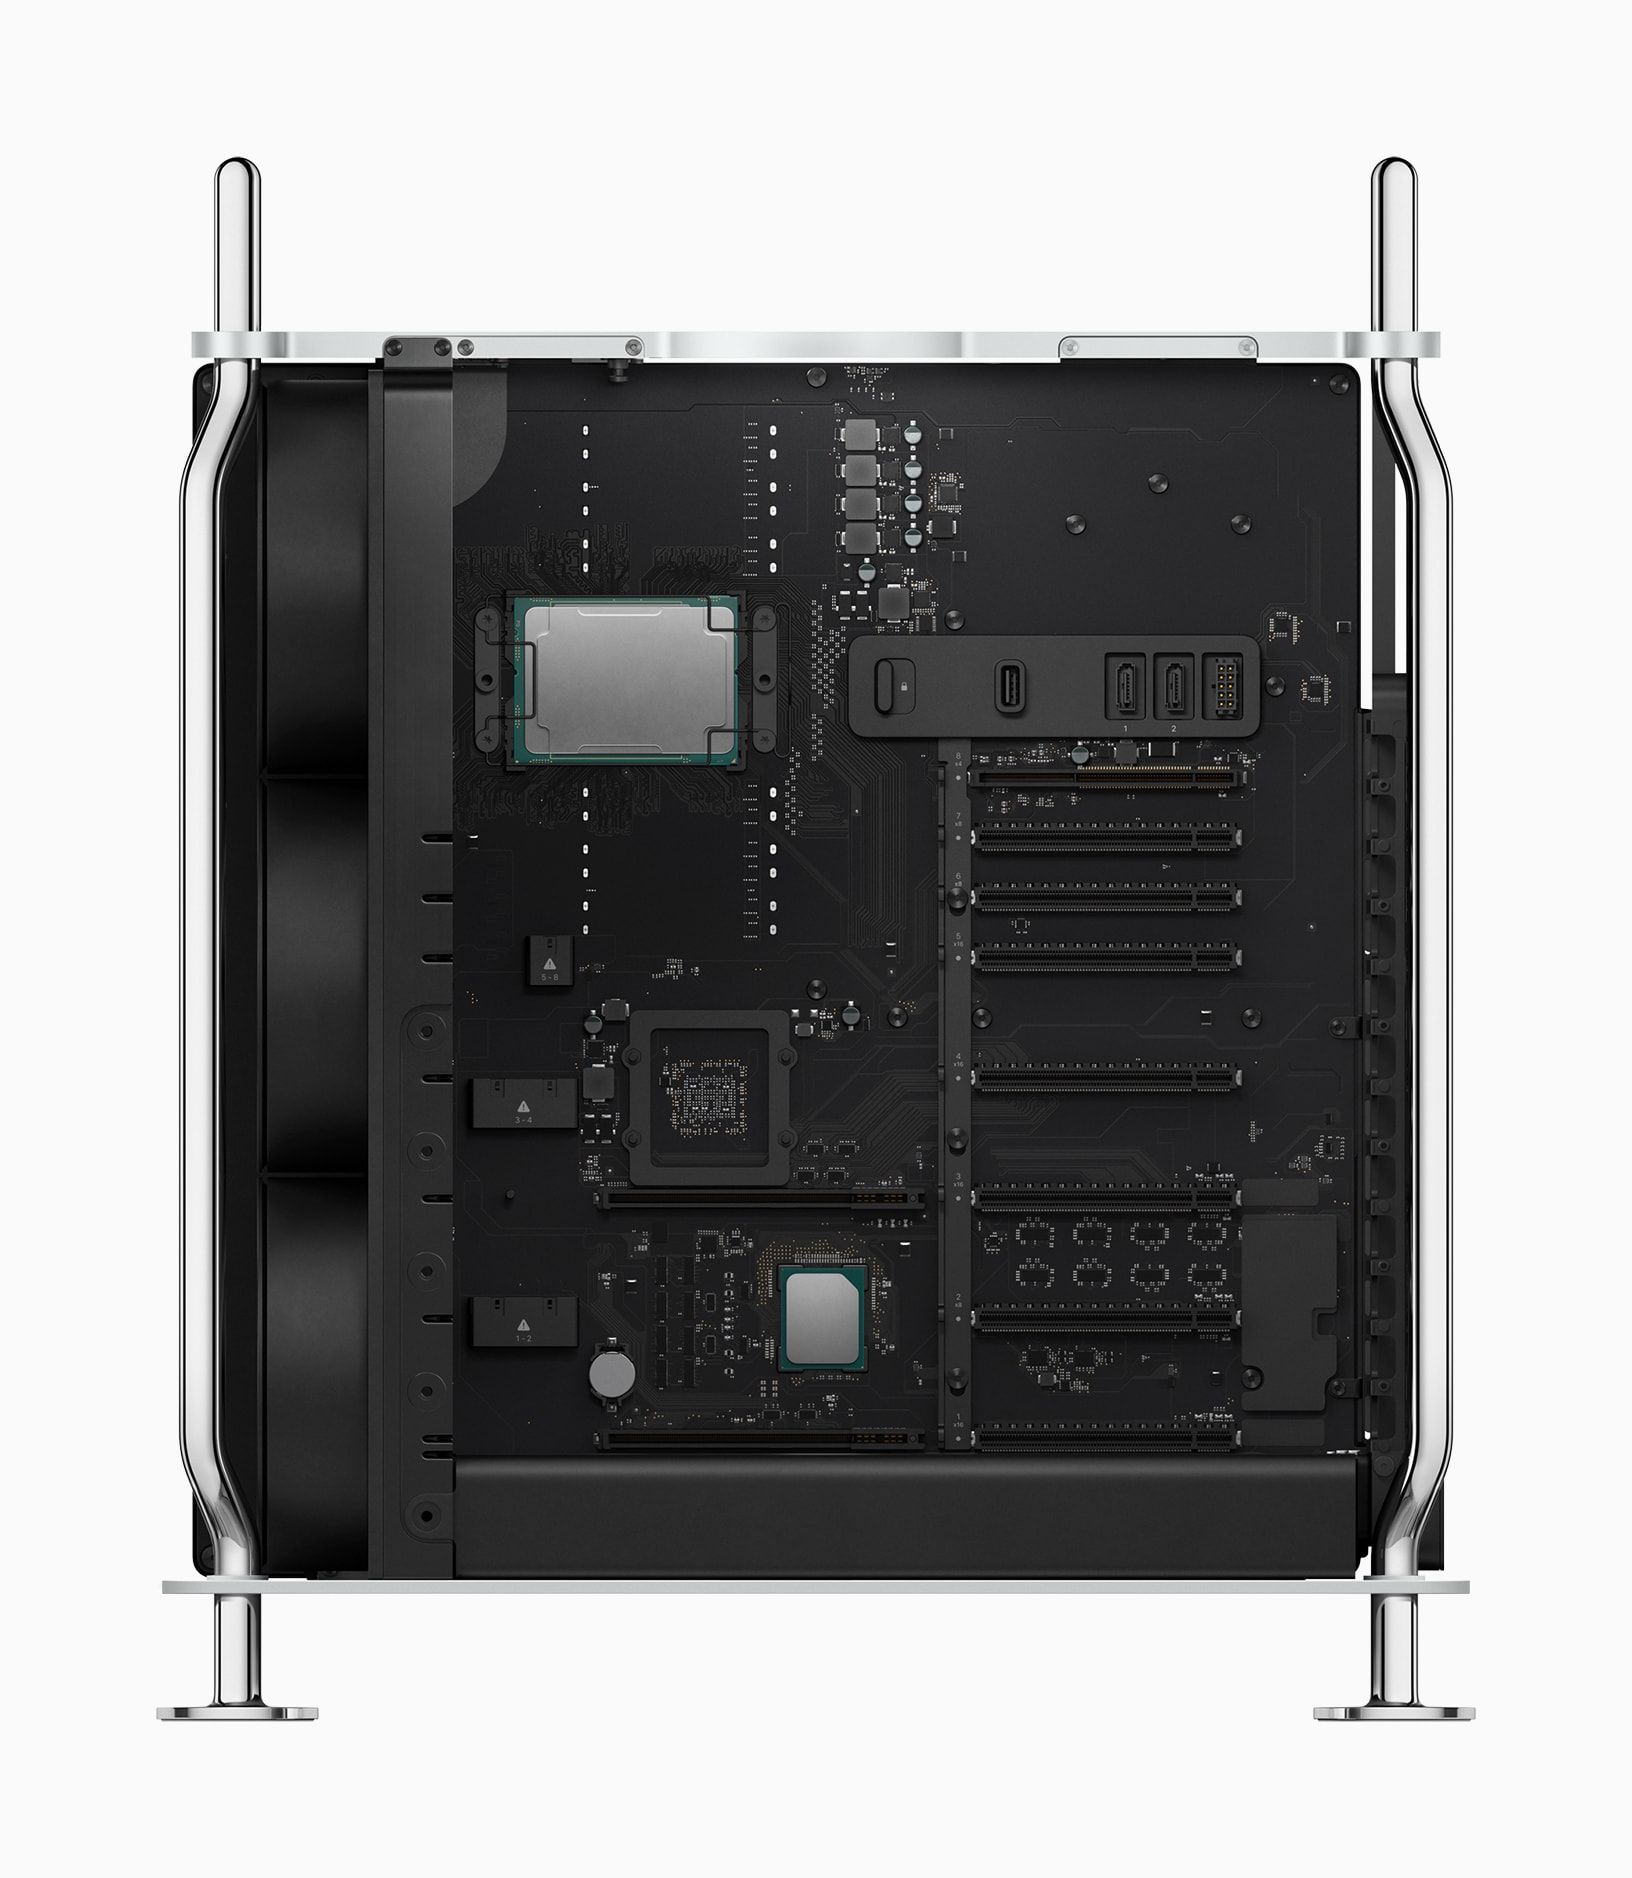 New Mac Pro inside